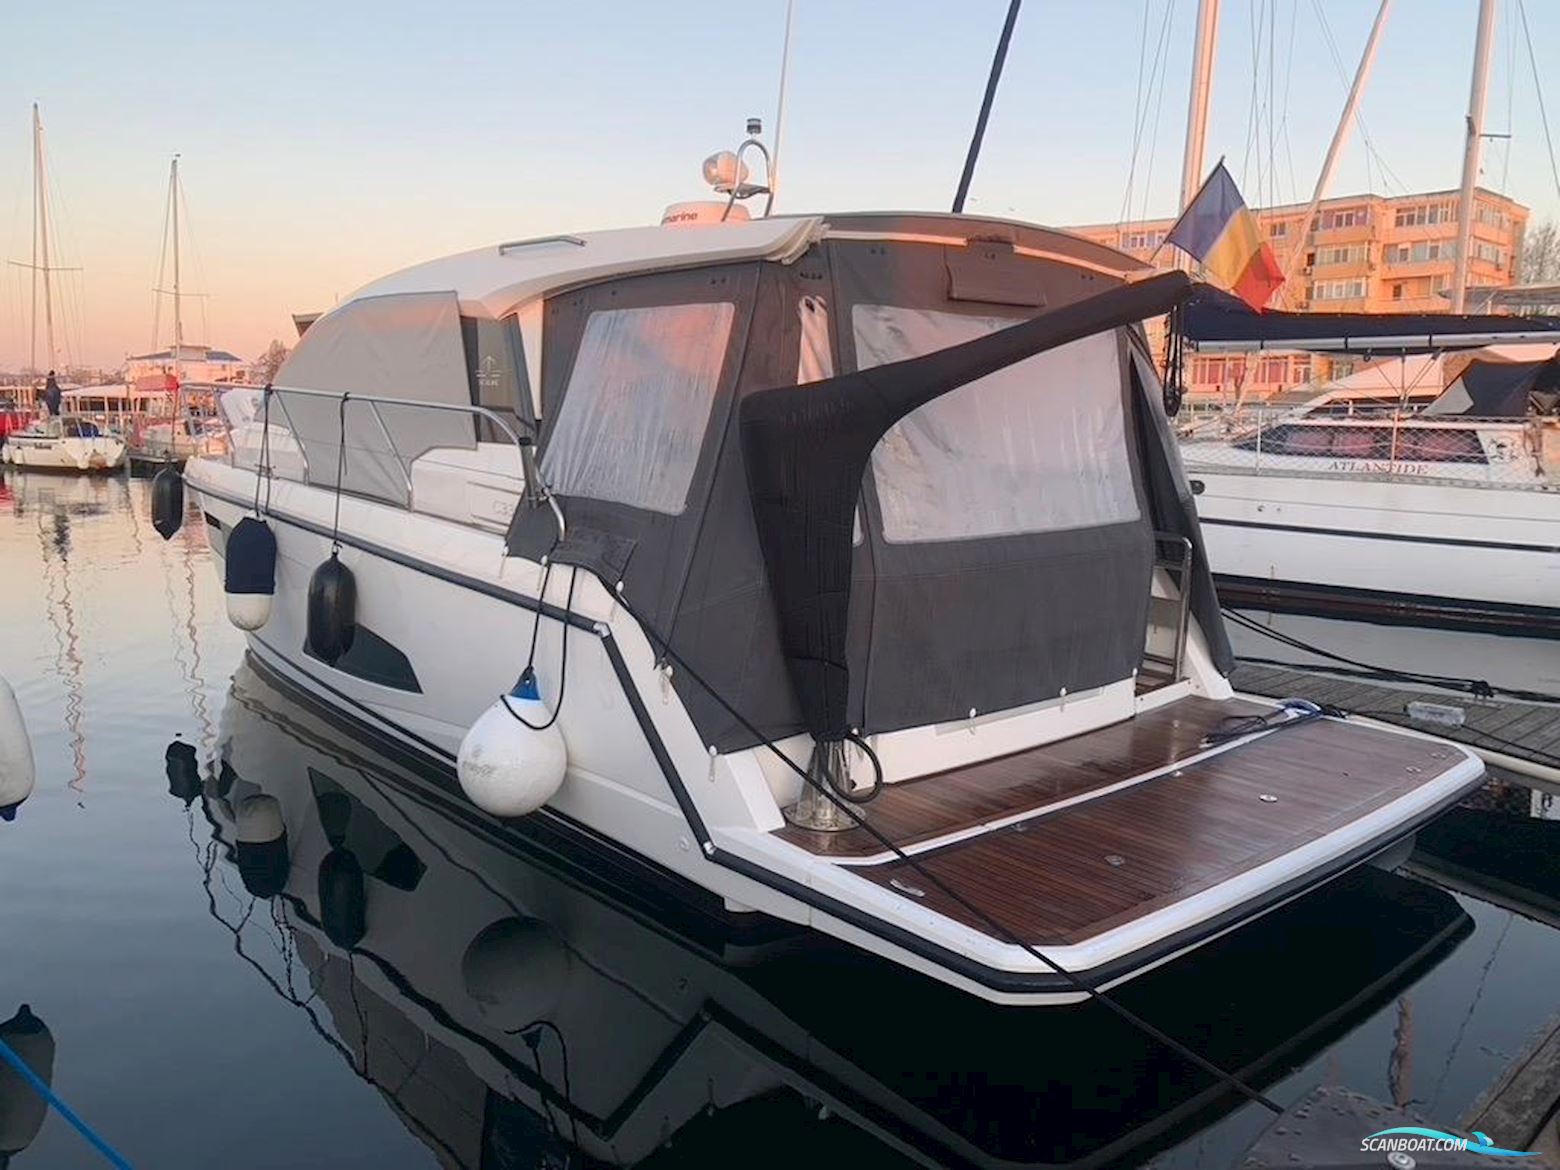 Sealine C330 Motorbåt 2018, med Volvo Penta motor, Ingen landinfo